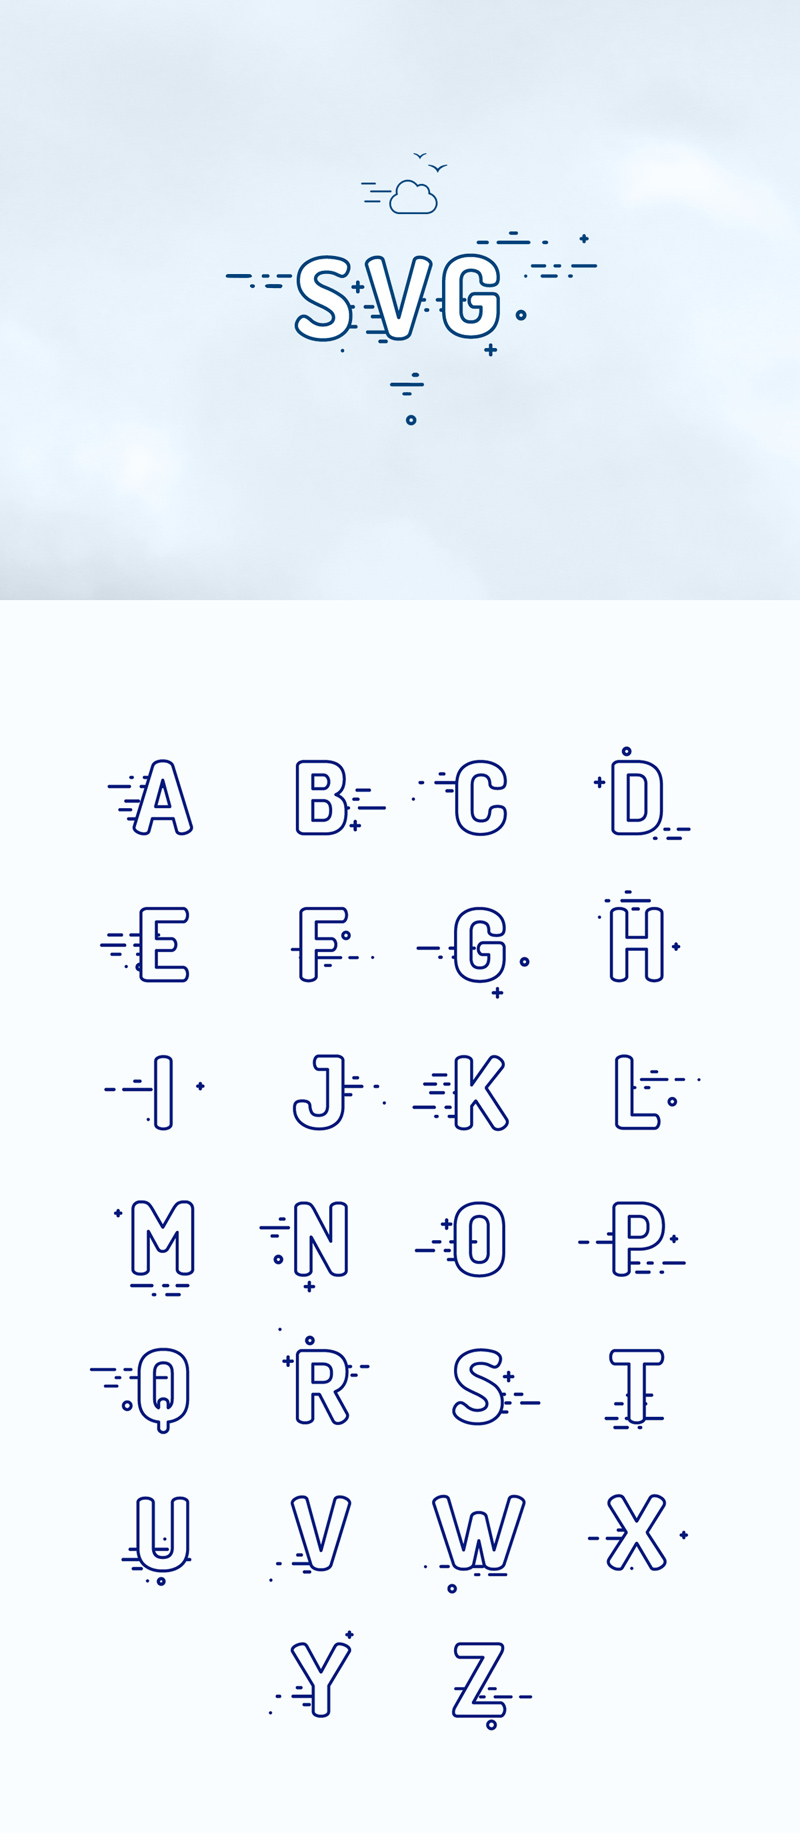 SVG Alphabet Illustration - Free Vector - Download Sketch Resource